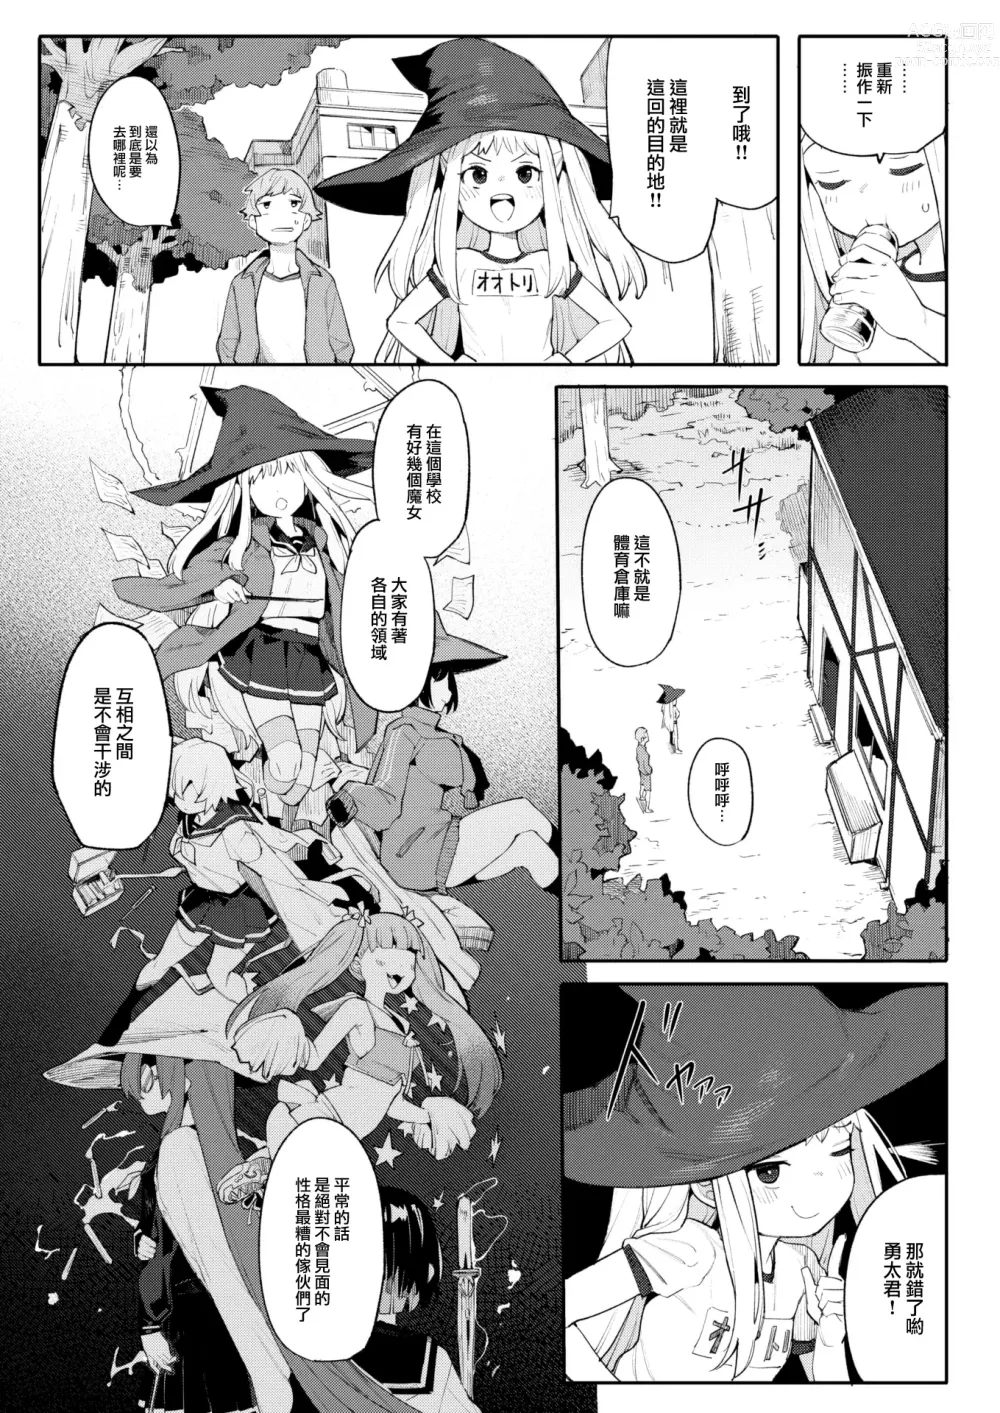 Page 5 of manga Majo wa hoshikute shikata ga nai!